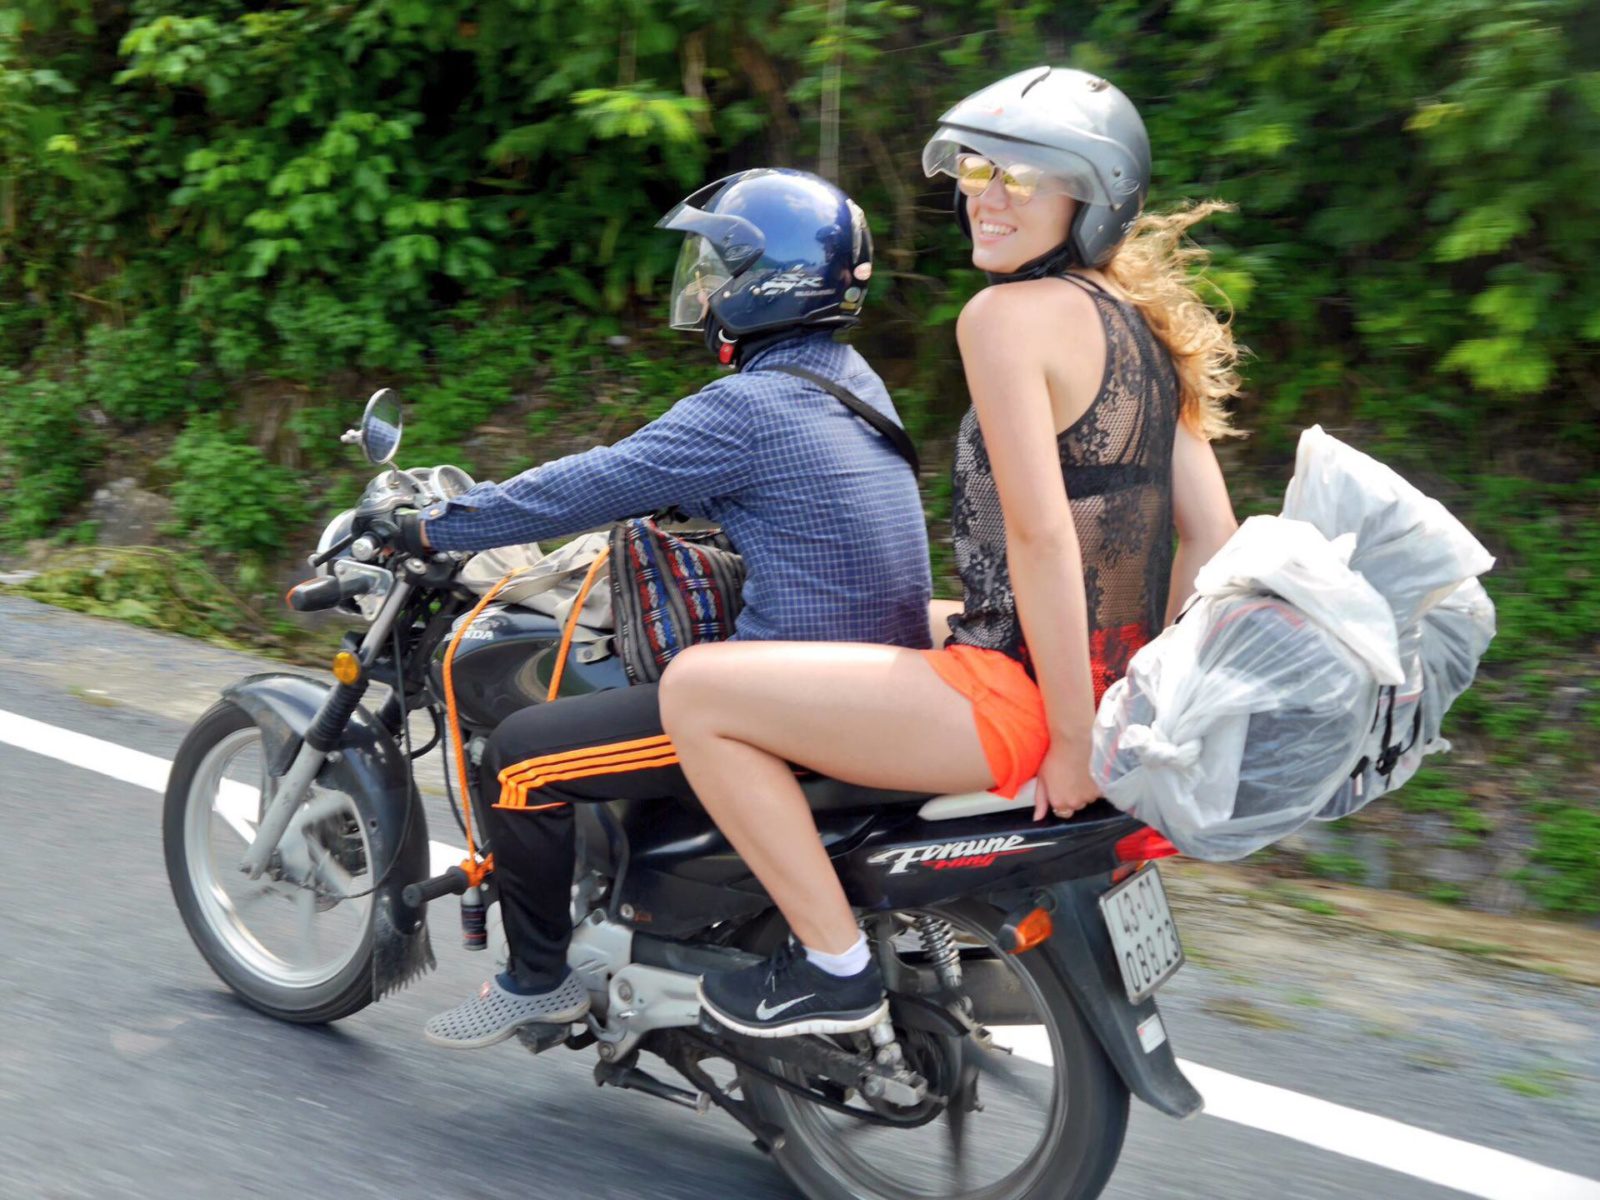 Paseo en moto de Hue a Hoi An. Cosas que debe saber antes de visitar Vietnam.